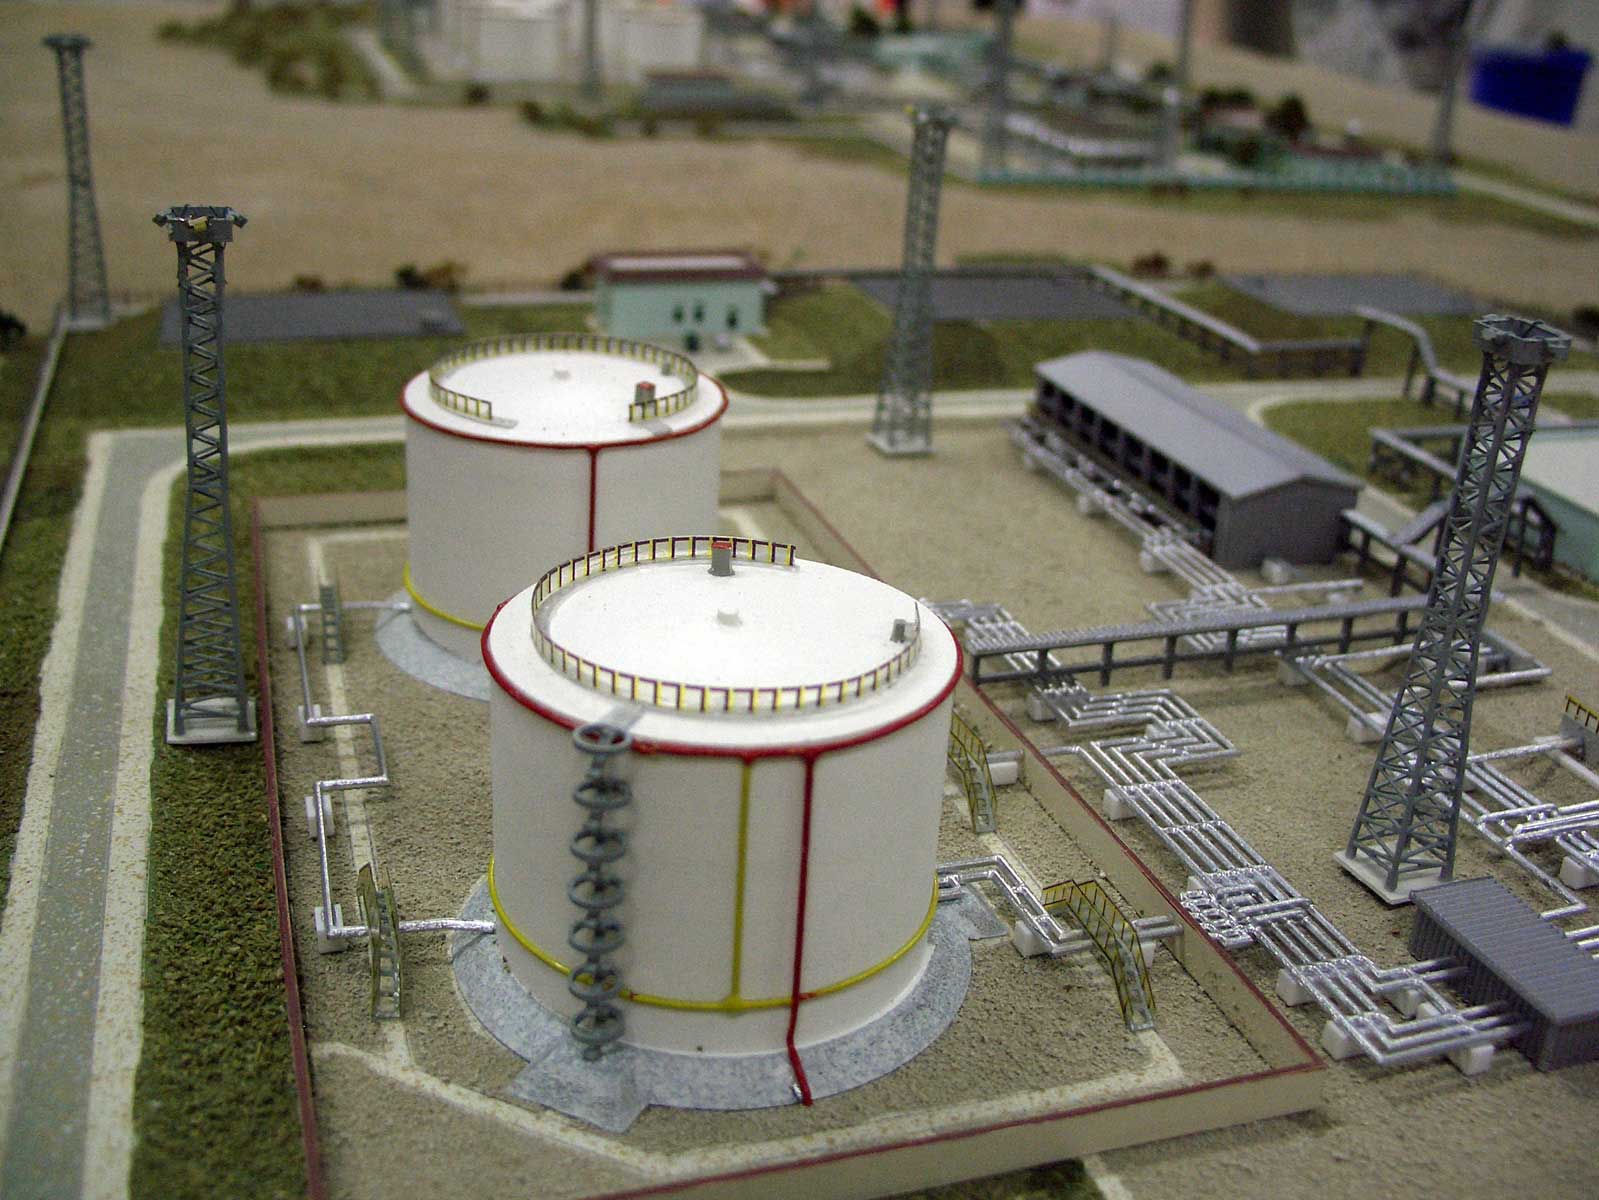 Мініатюрна модель нафтопереробного заводу в Корпедже - Балканабат (НПС Корпедже і НПС Гумдаг). М 1:500. Розмір підмакетніка 80х120 см.